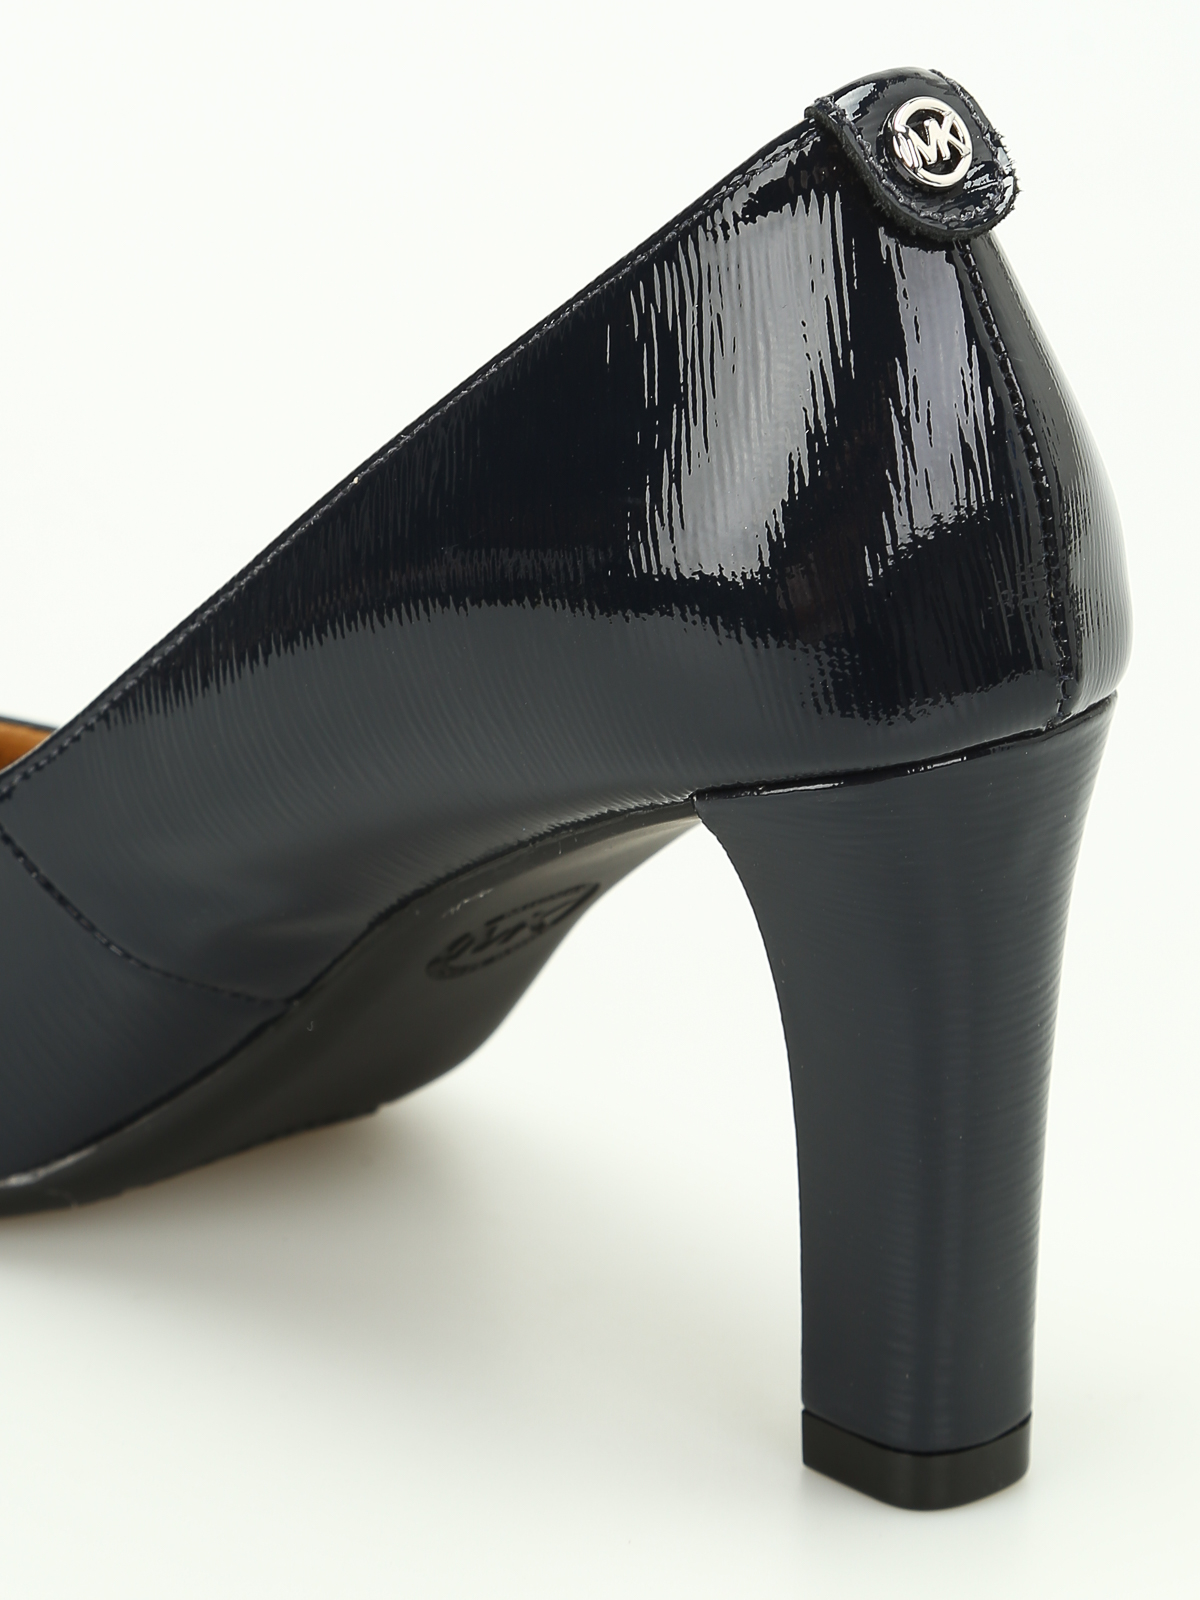 Court shoes Michael Kors Flex patent pumps 40F7ABMP1A414